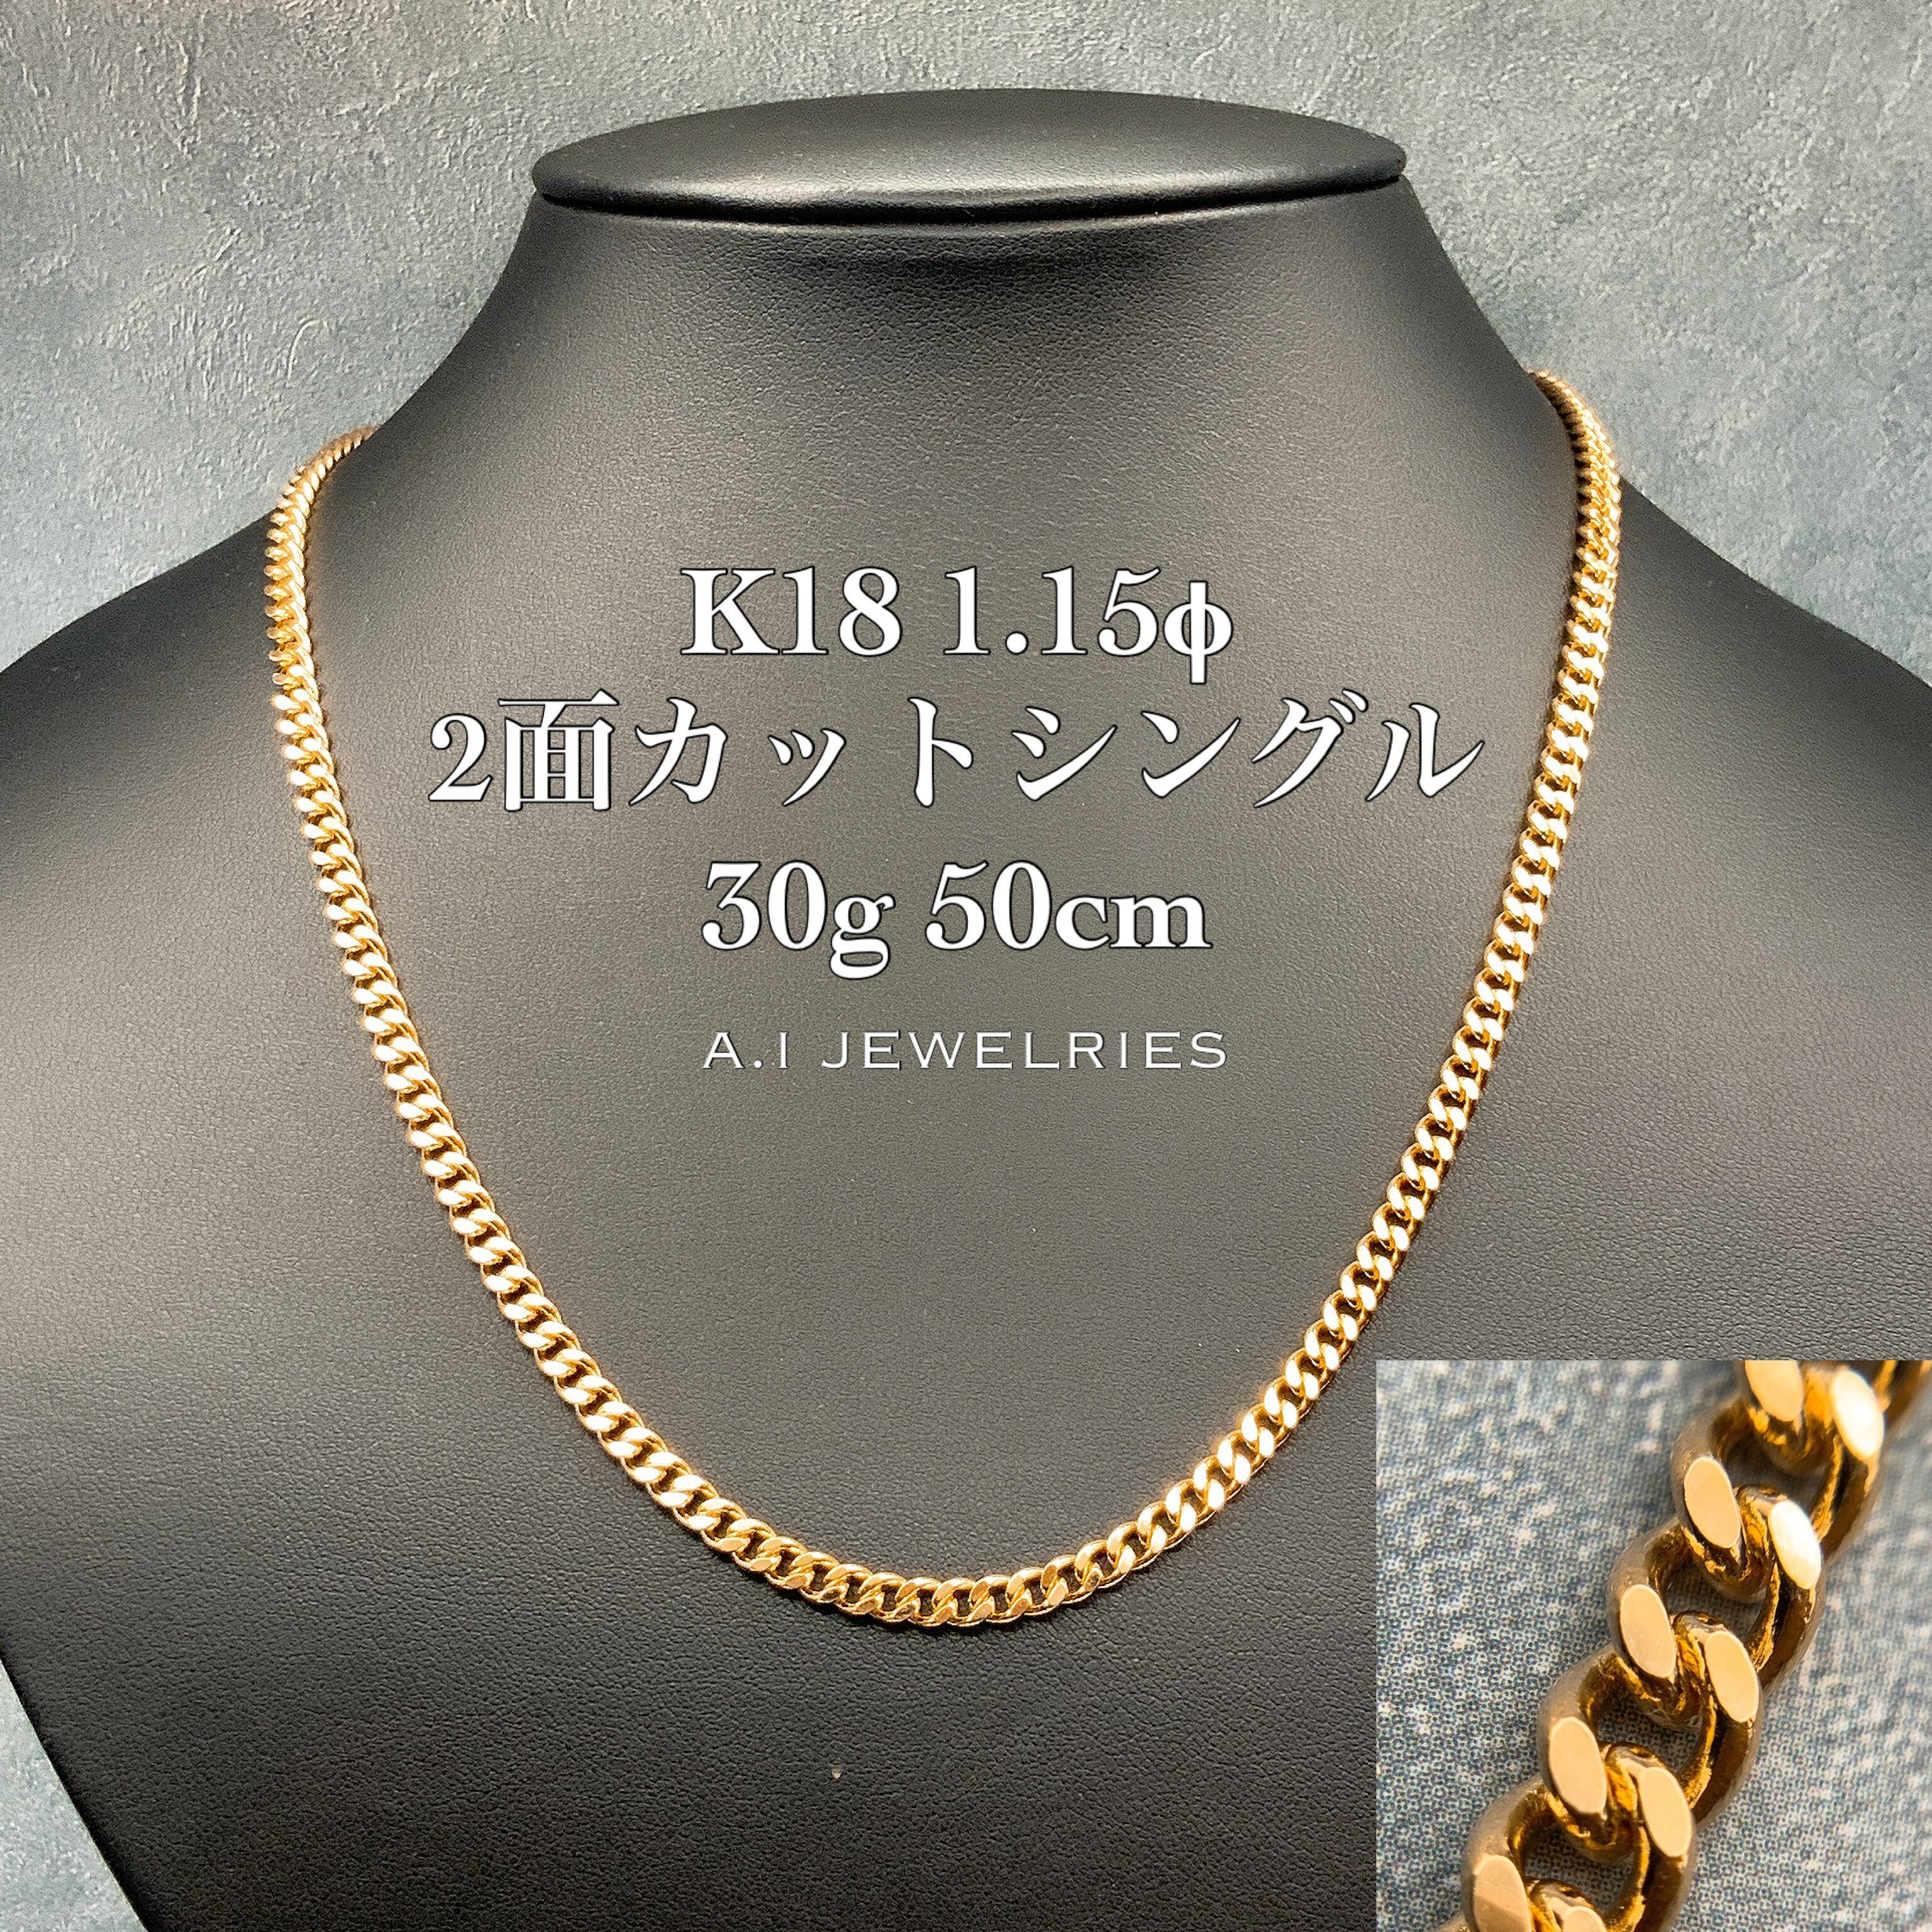 K18 2面カット シングル ネックレス 1.15φ 30g 50cm 18金 18k K18 2cut single necklace  1.15φ 30g 50cm 品番:K2s115-3050 JEWELRIES エイアイジュエリーズ